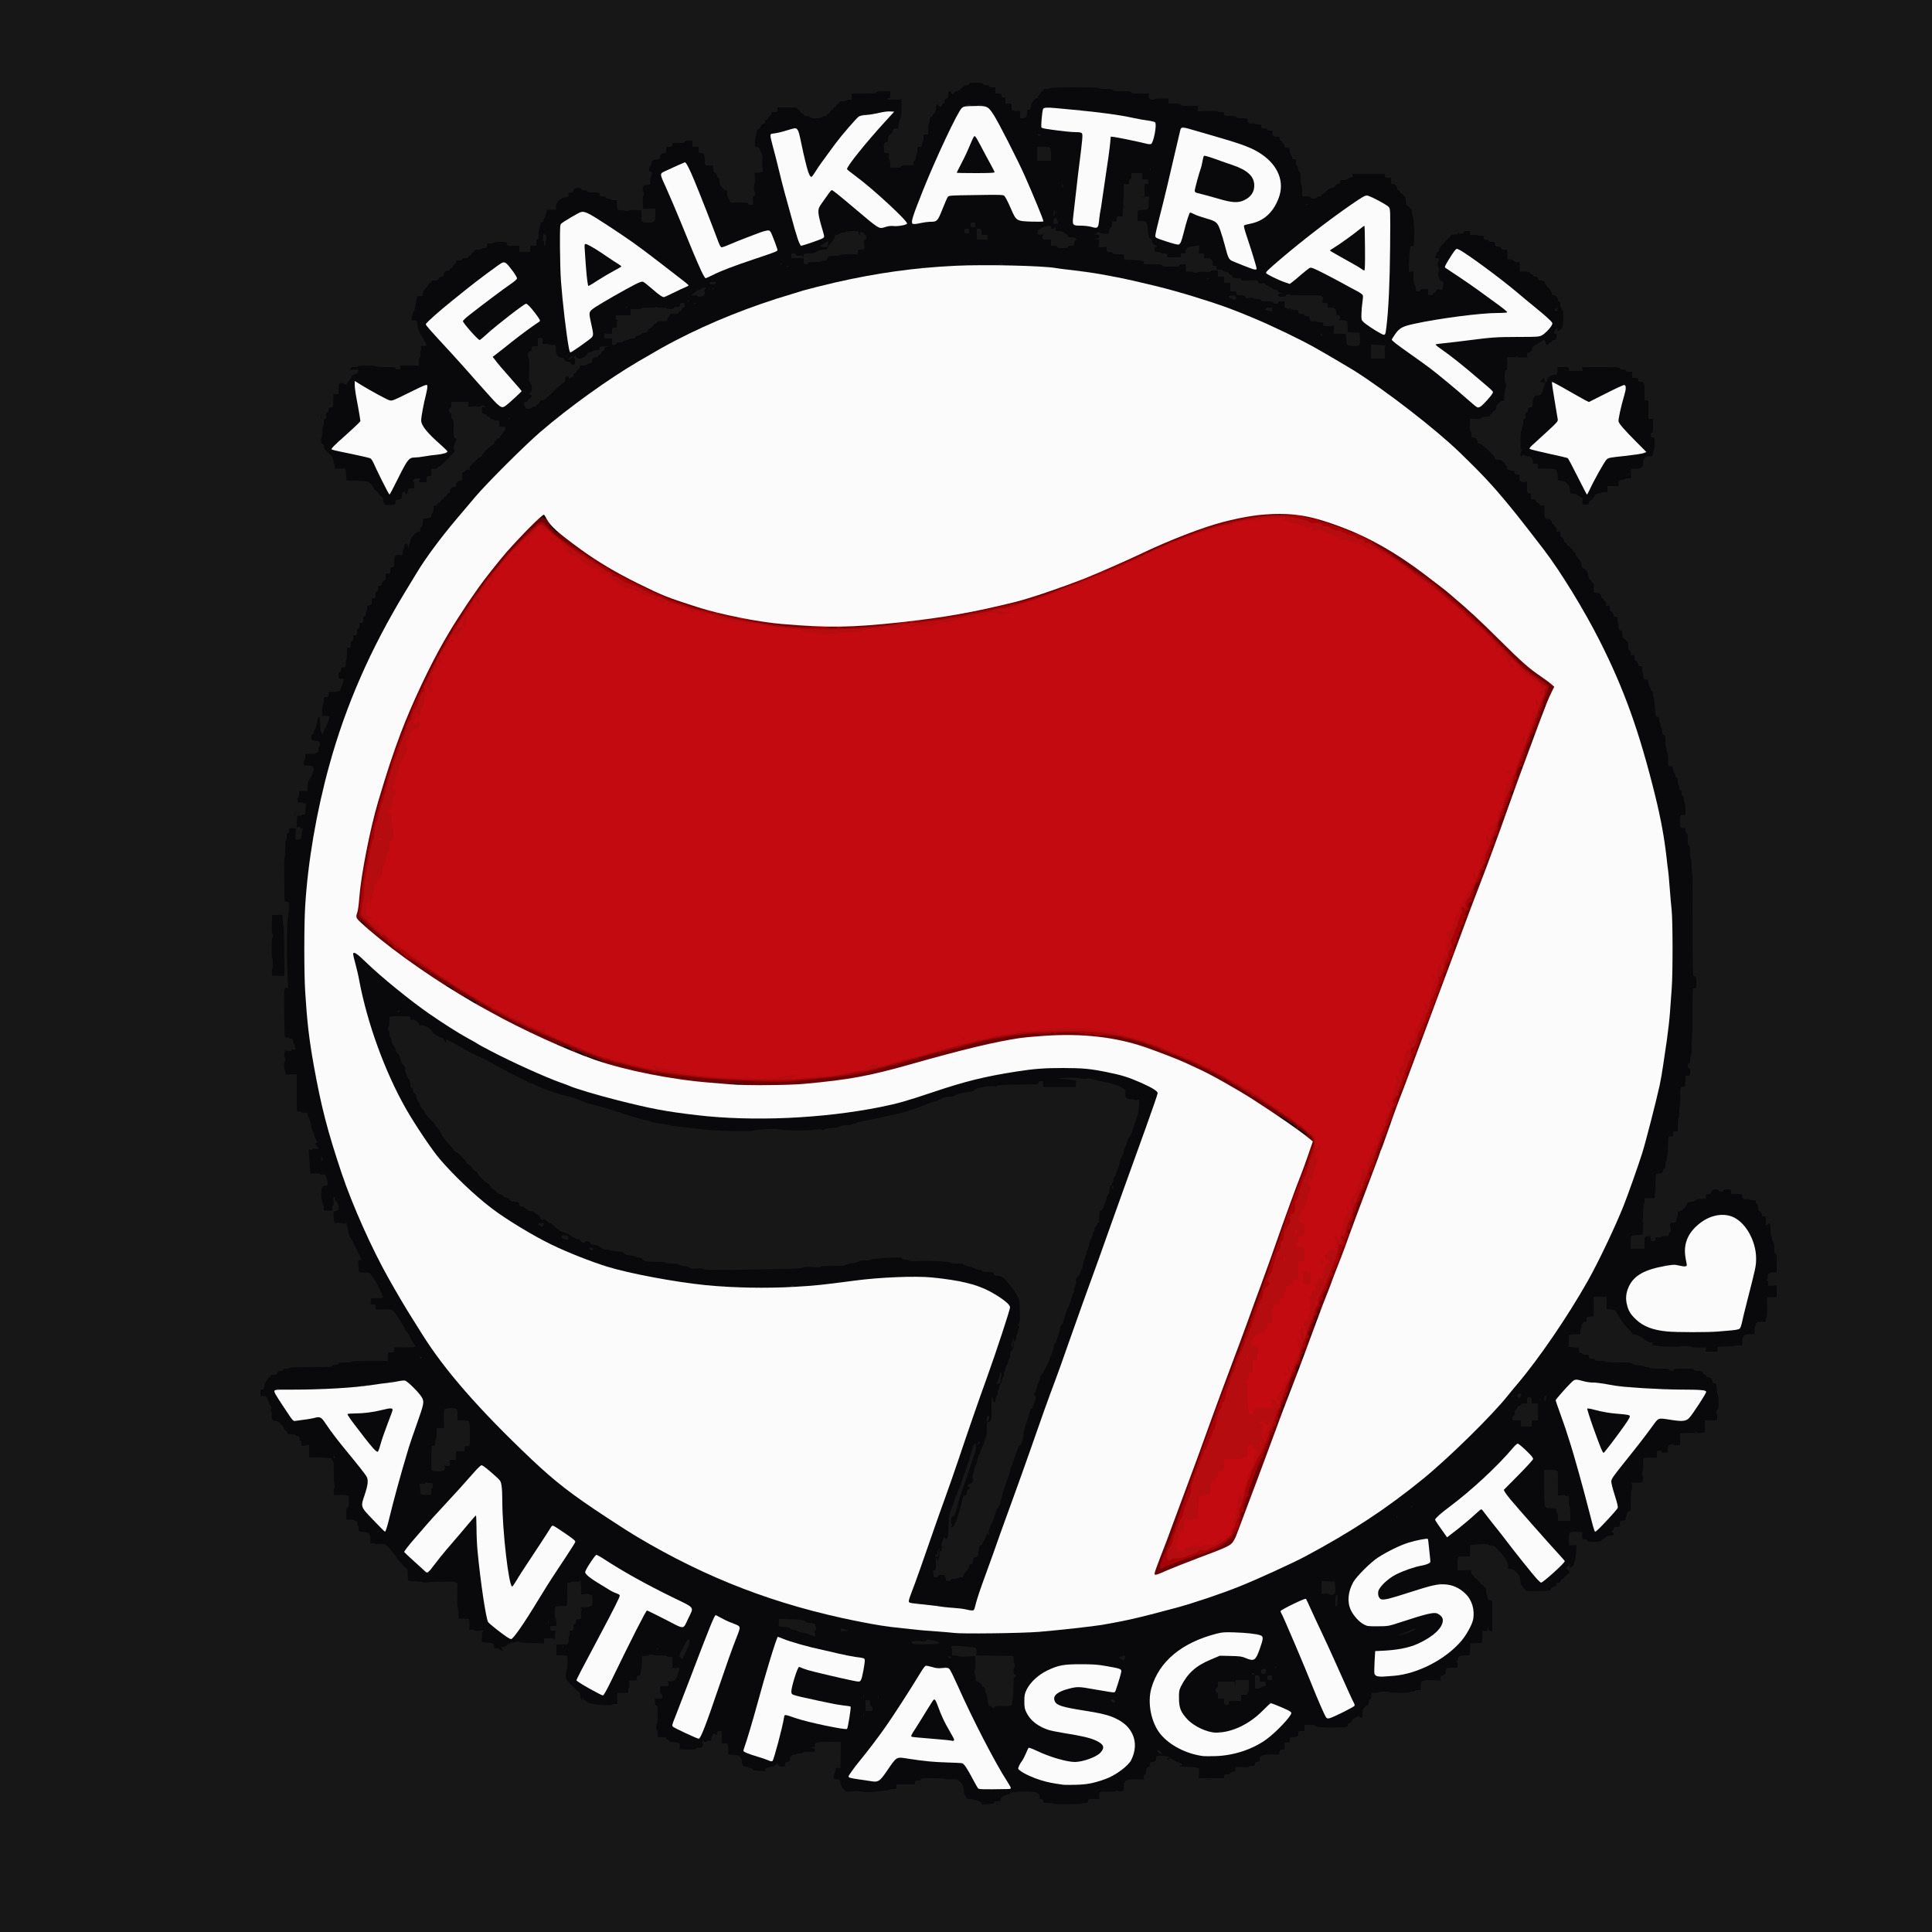 Falkatraz antifascista